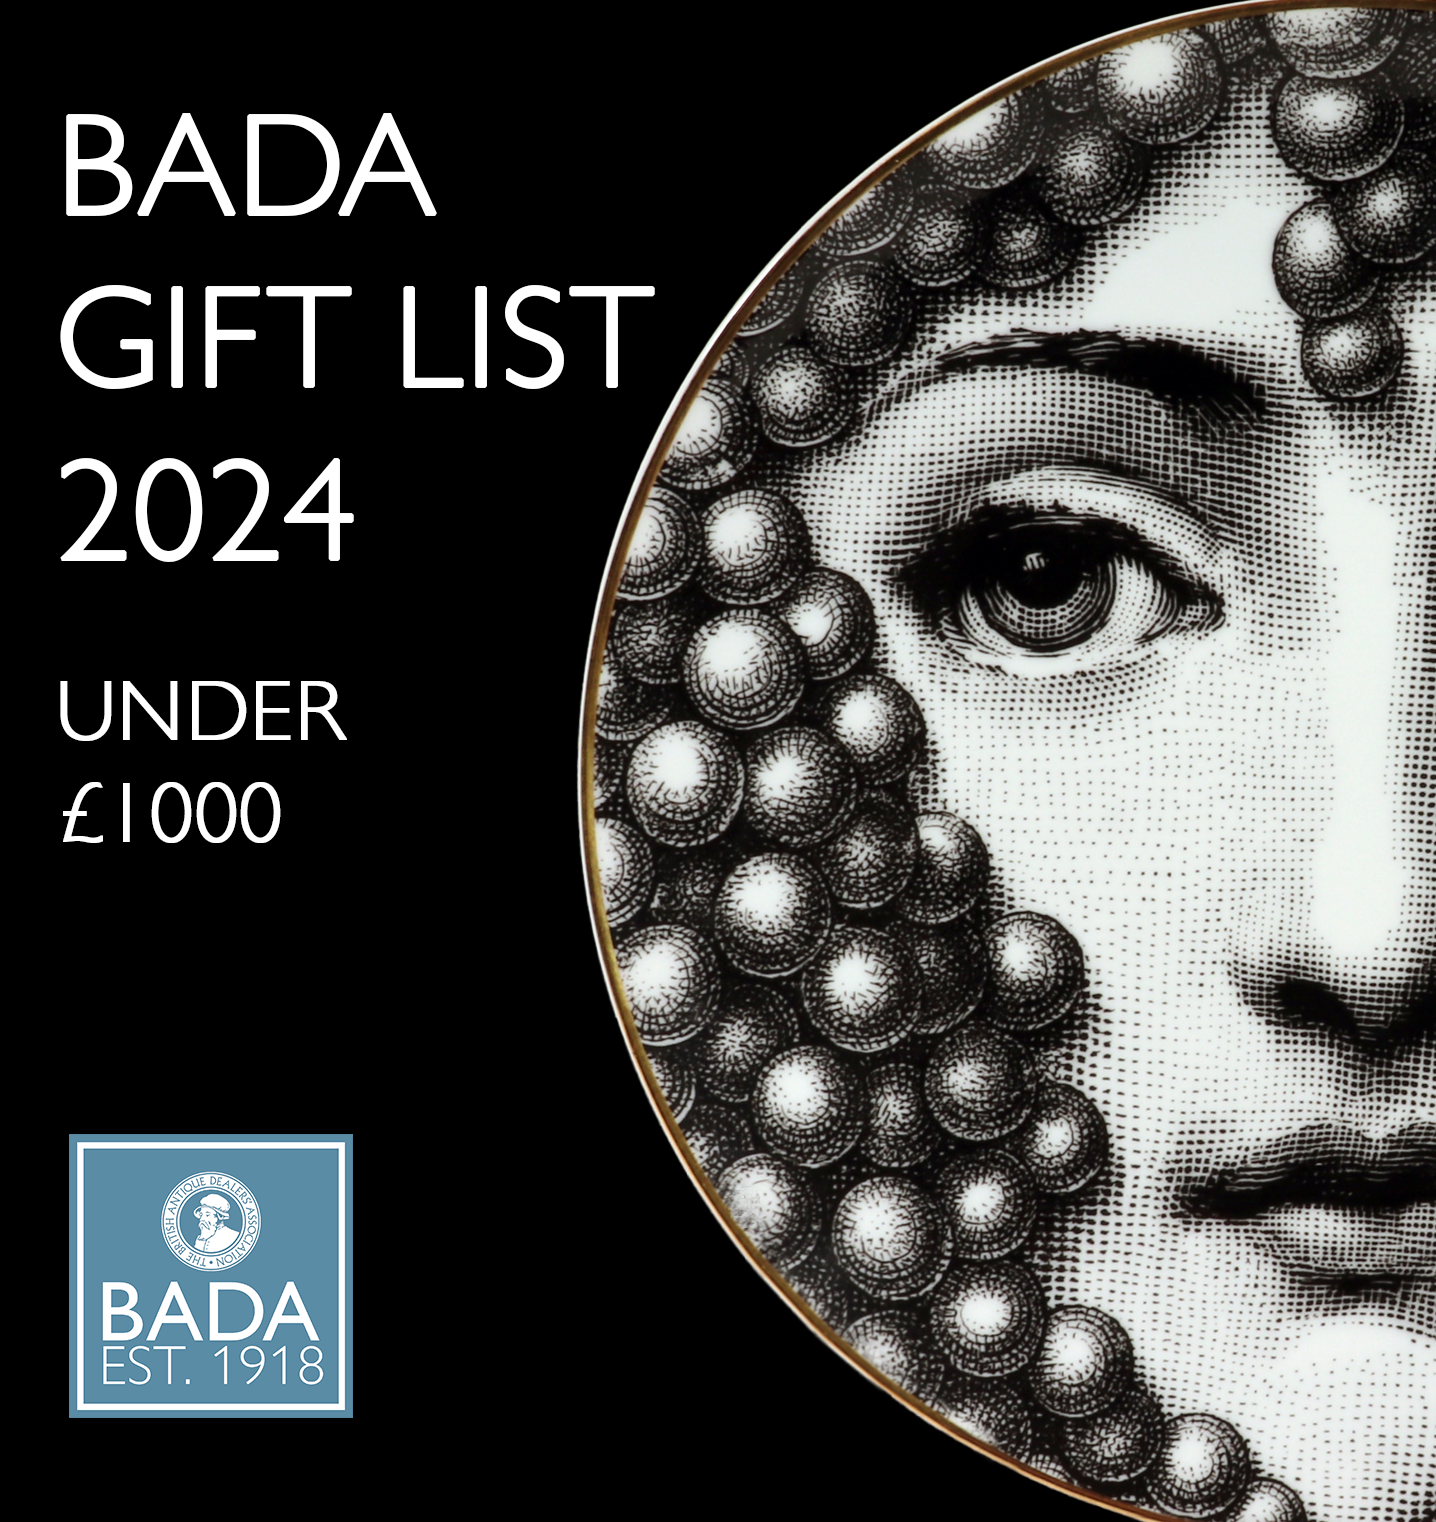 BADA Gift List - Under £1000